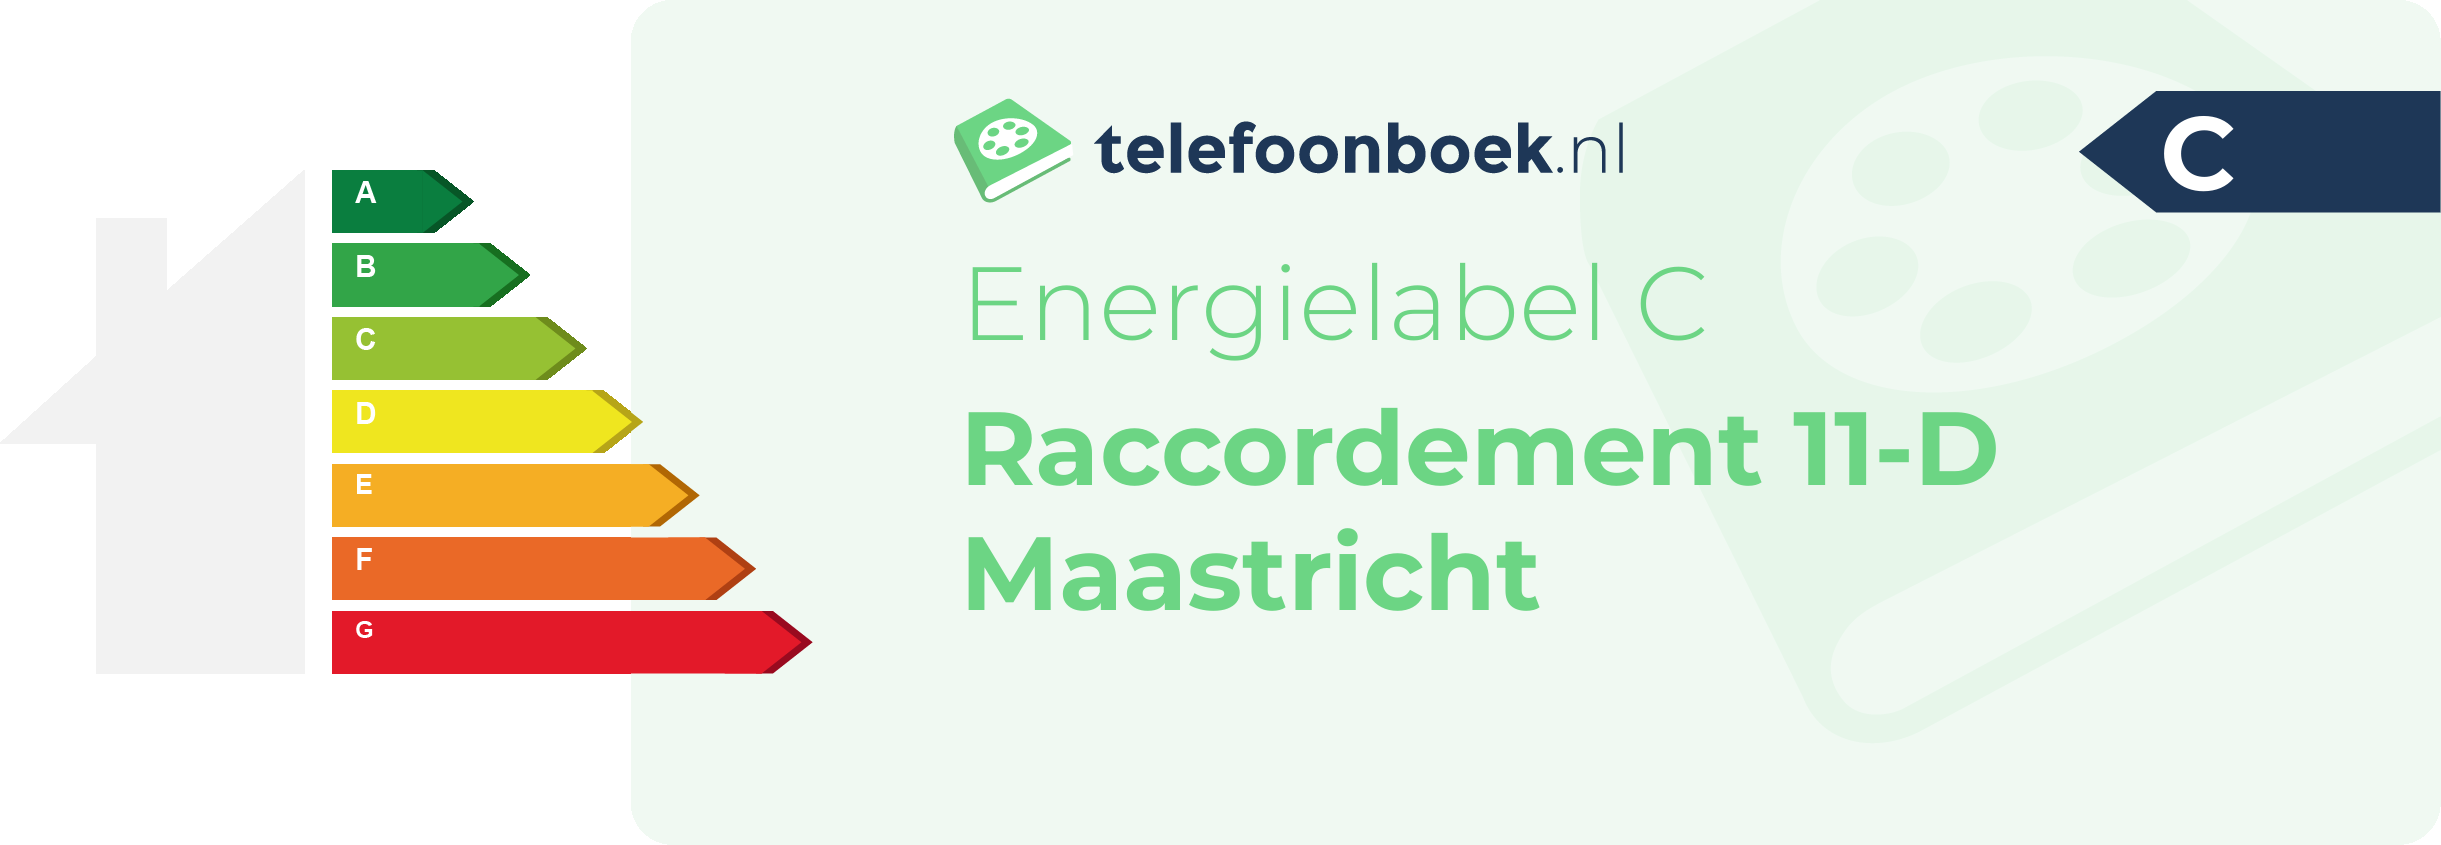 Energielabel Raccordement 11-D Maastricht